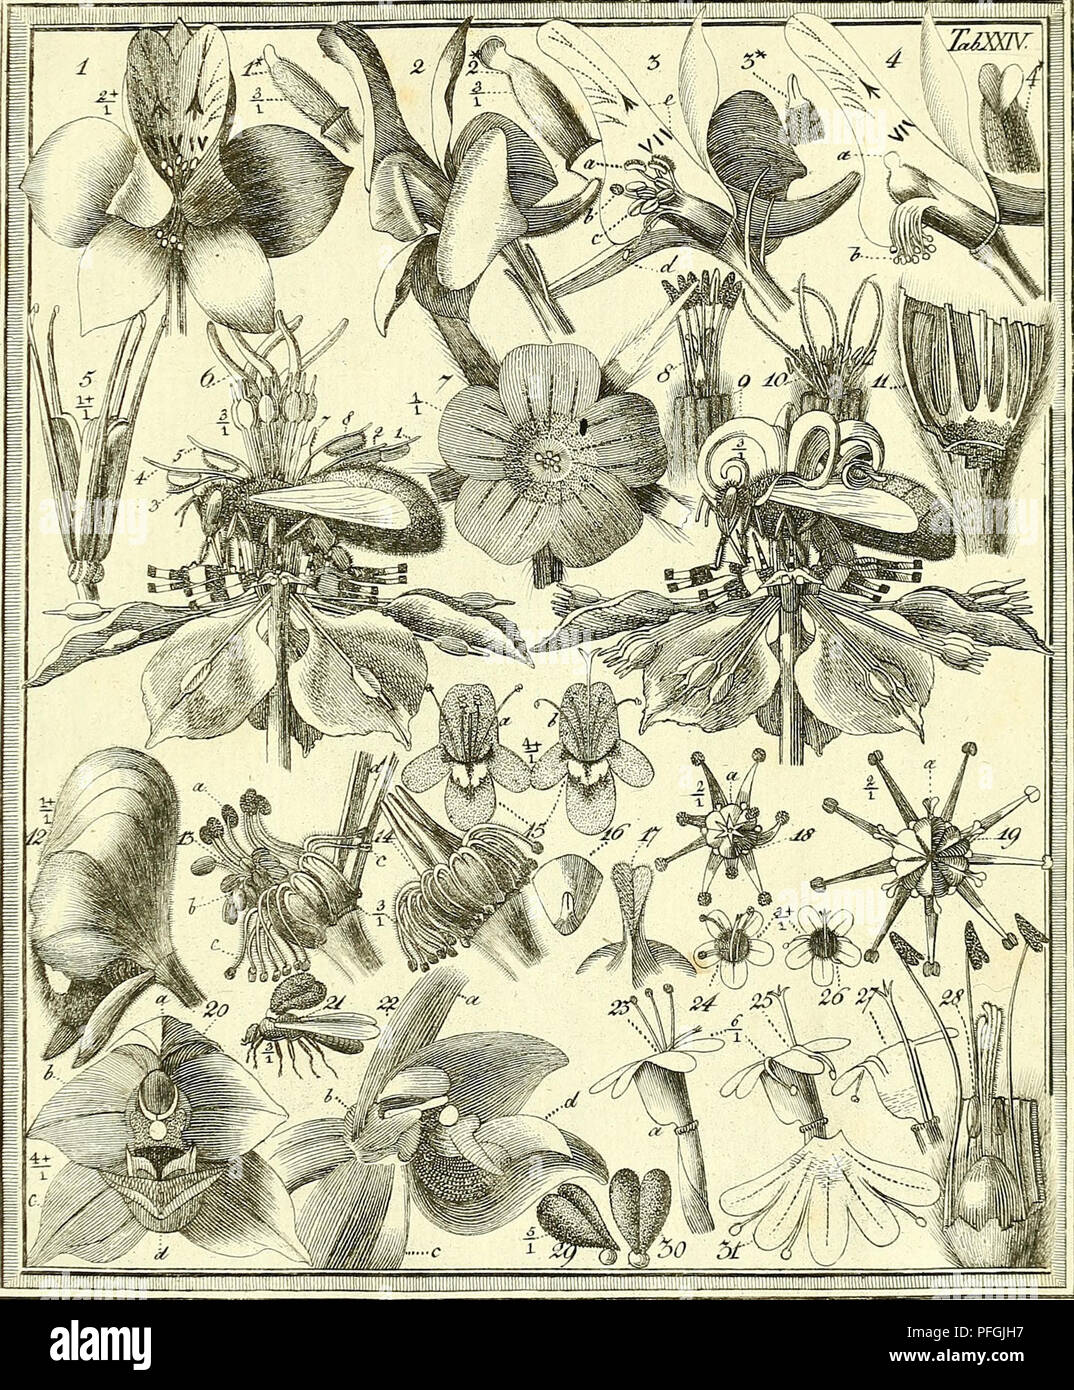 . Das entdeckte Geheimniss der Natur im Bau und in der Befruchtung der Blumen. La botánica; flores; la fertilización de las plantas. . Por favor tenga en cuenta que estas imágenes son extraídas de la página escaneada imágenes que podrían haber sido mejoradas digitalmente para mejorar la legibilidad, la coloración y el aspecto de estas ilustraciones pueden no parecerse perfectamente a la obra original. Sprengel, Christian Konrad, 1750-1816; Capieux, Johann Stephan, 1748-1813, grabador; Jäck, C. (CARL), grabador; Arndt, Wilhelm, 1750-1813, grabador; Wohlgemuth, A. , grabador; Lehmann, C. A. , fl. 1803, ex propietario. DSI; Biblioteca Burndy, donante. DSI. Berlín Foto de stock